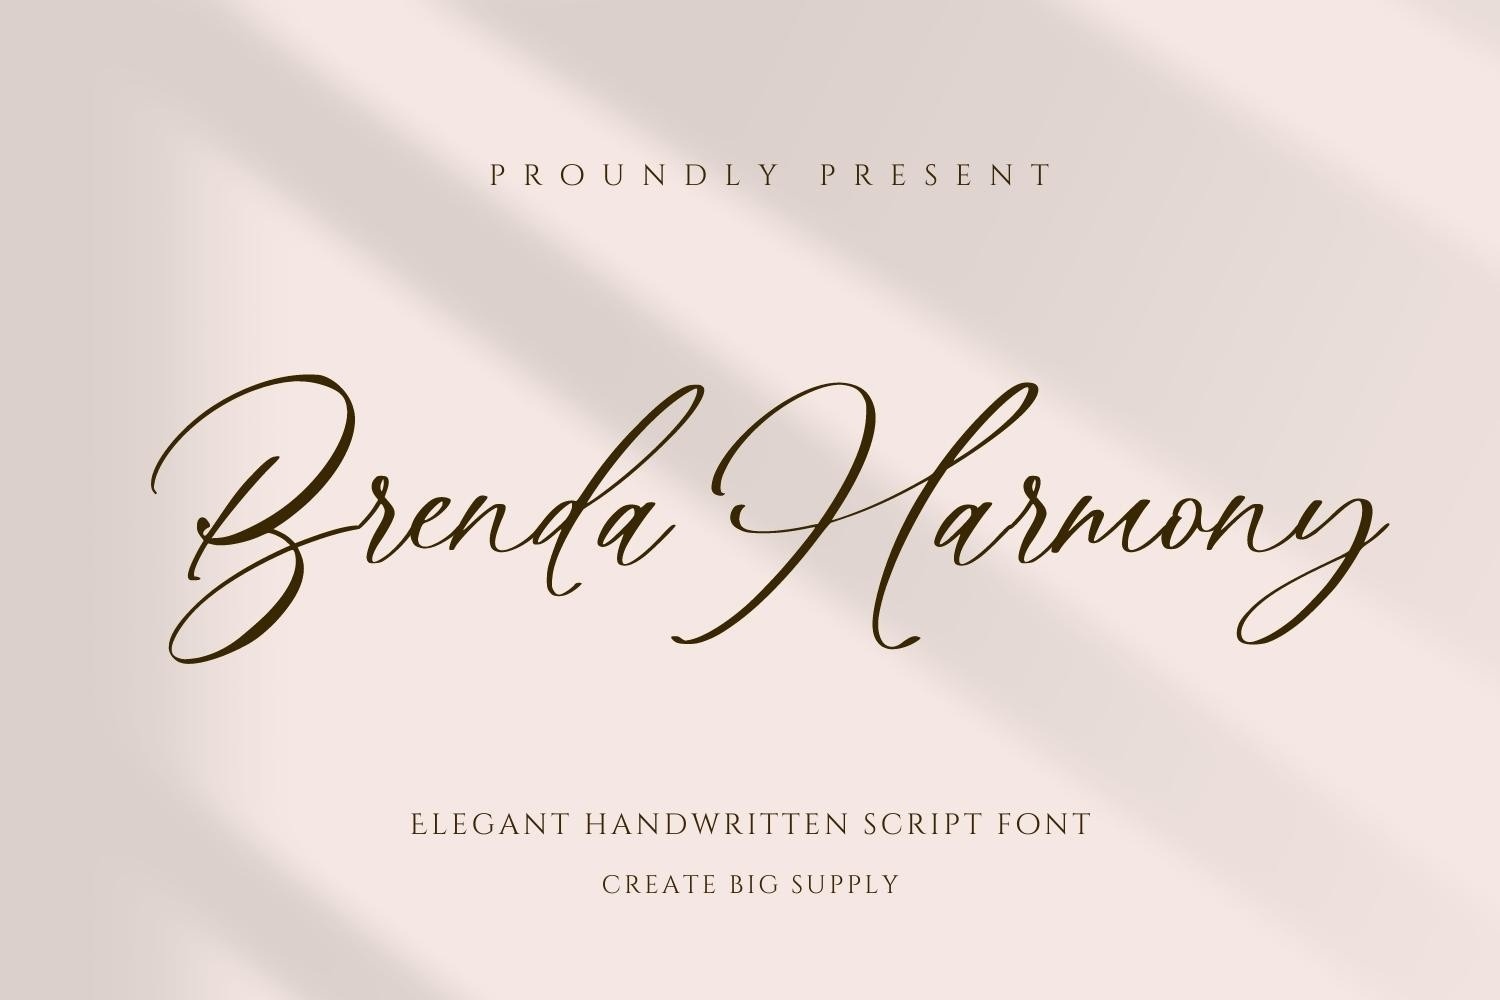 Пример шрифта Brenda Harmony